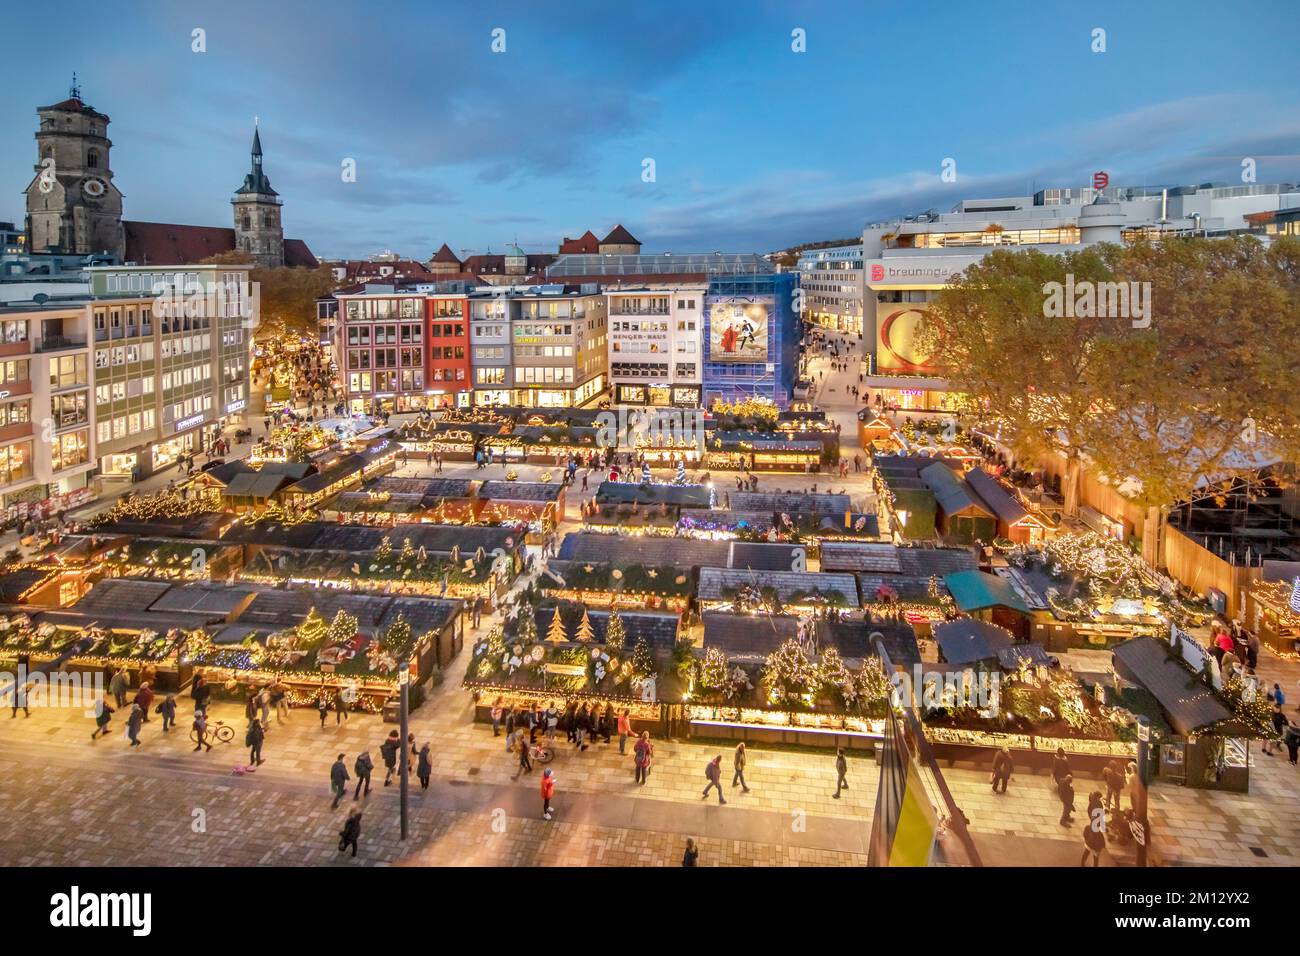 Panorama del mercato di Natale a Stoccarda sulla piazza del municipio, vista dalla finestra panoramica del municipio alle bancarelle, la fila di negozi, la chiesa collegiata e il grande magazzino Breuninger Foto Stock